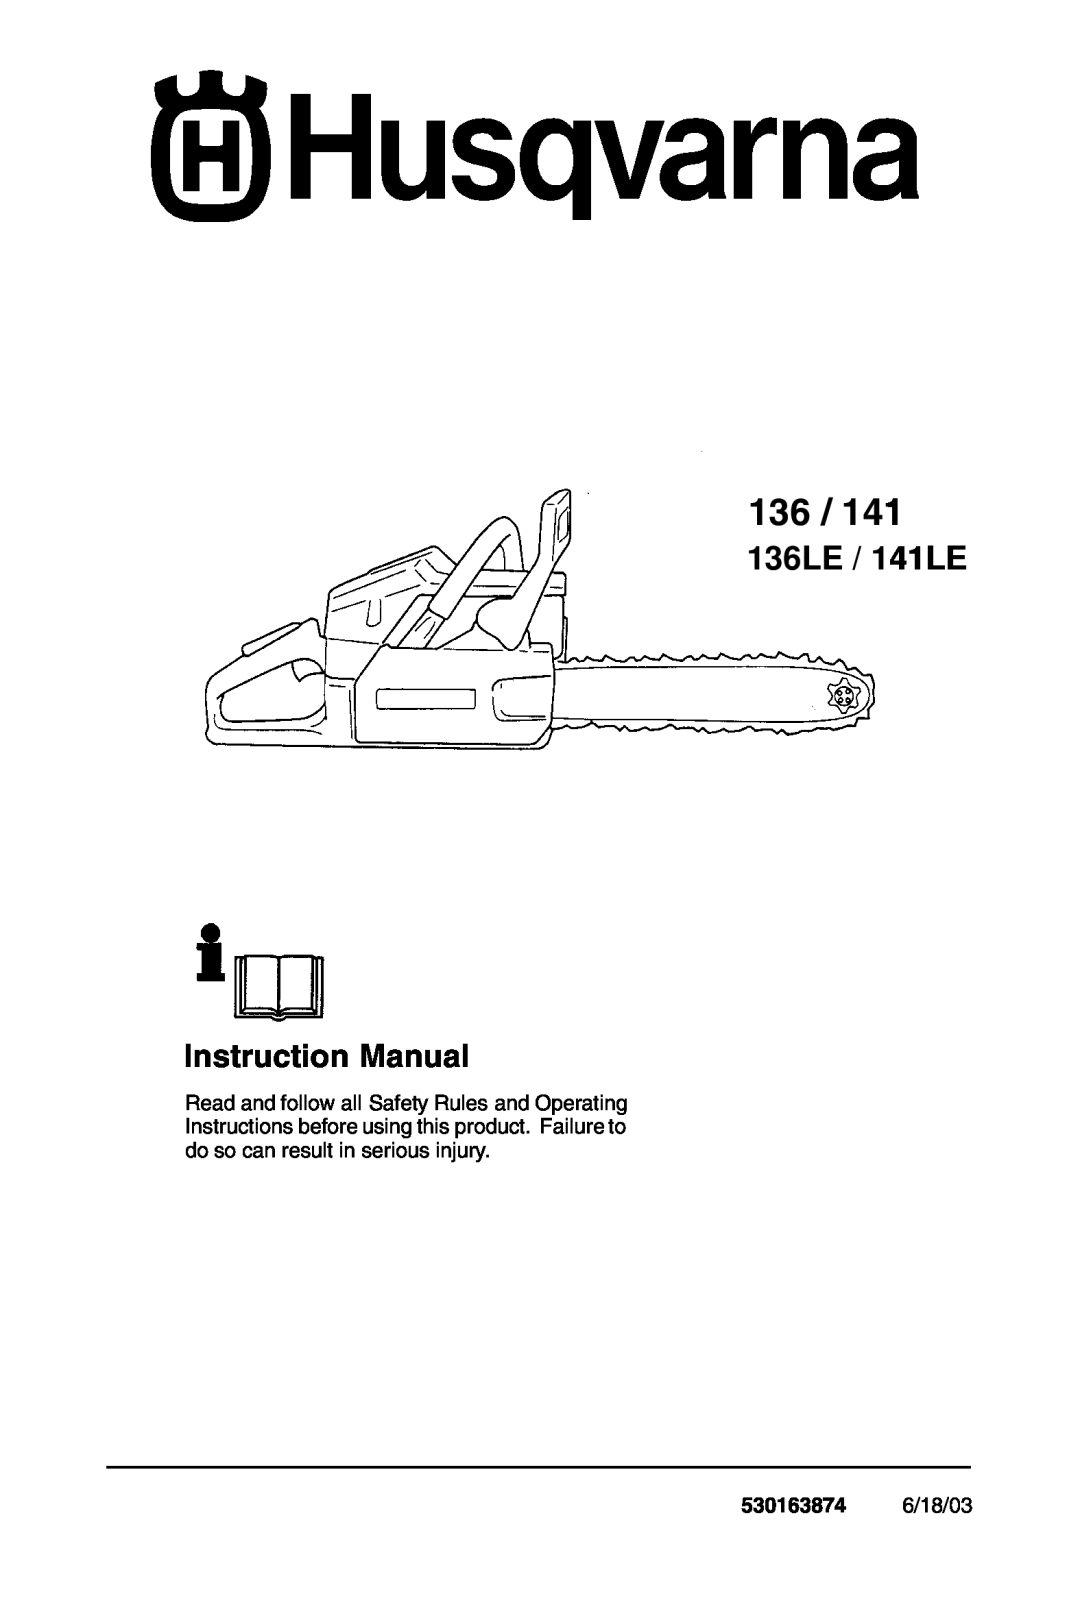 Husqvarna 136, 141, 136LE, 141LE instruction manual 530163874 6/18/03, 136LE / 141LE Instruction Manual 